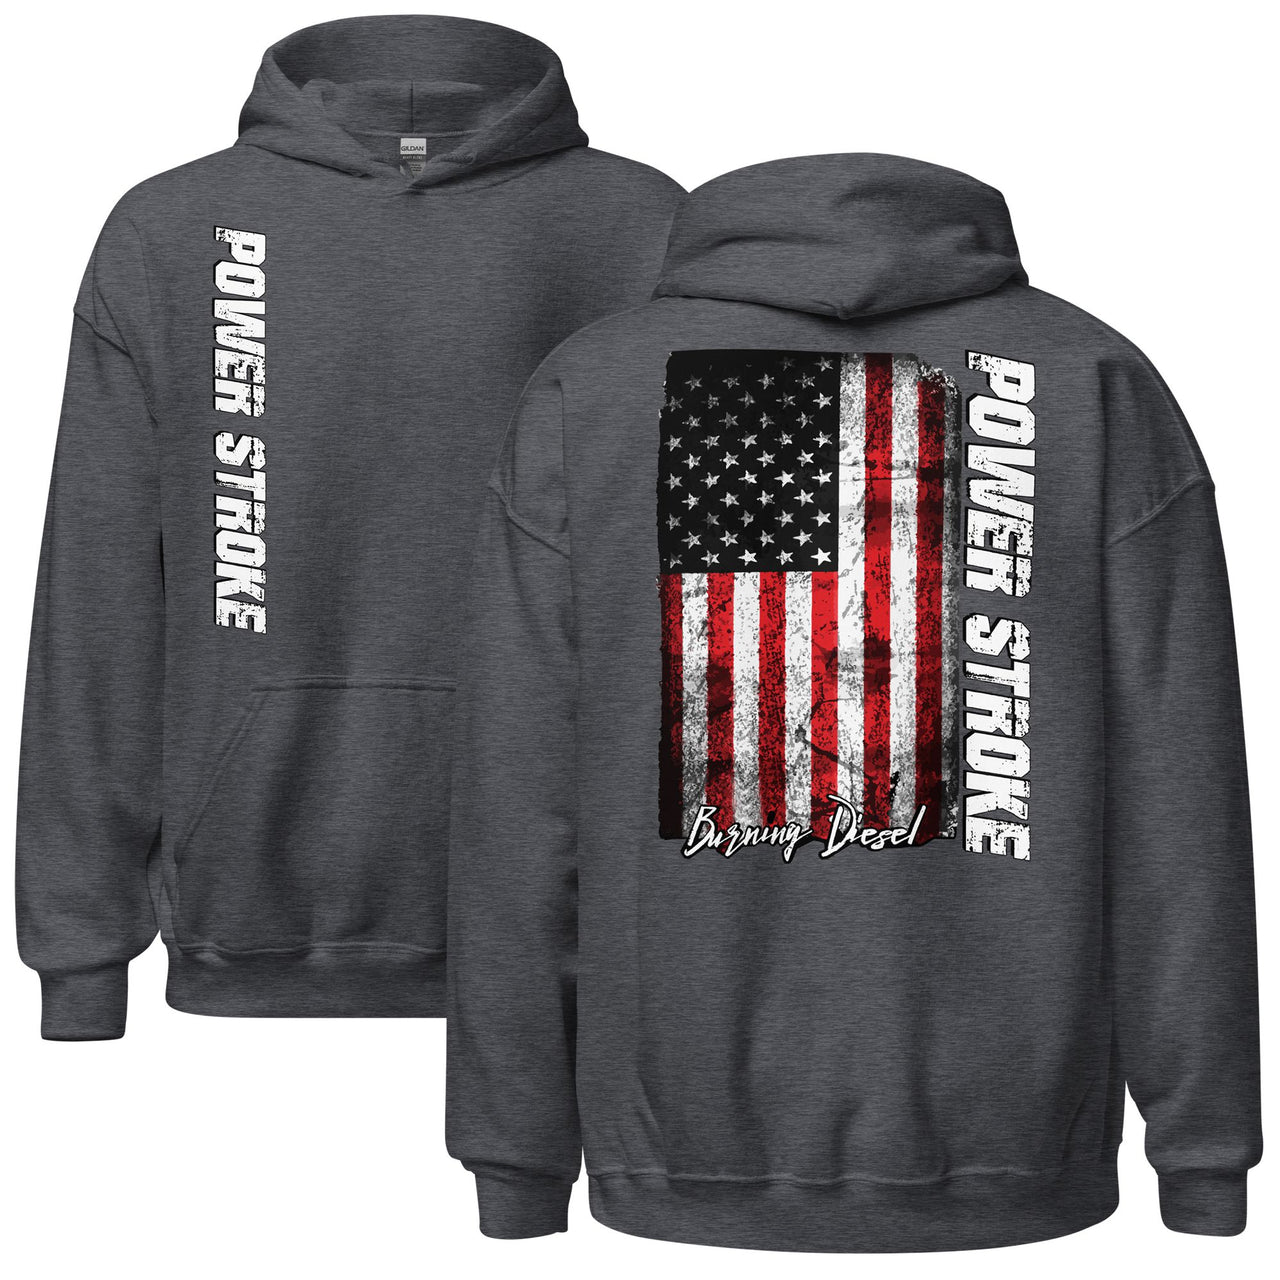 Powerstroke Hoodie with American Flag in grey